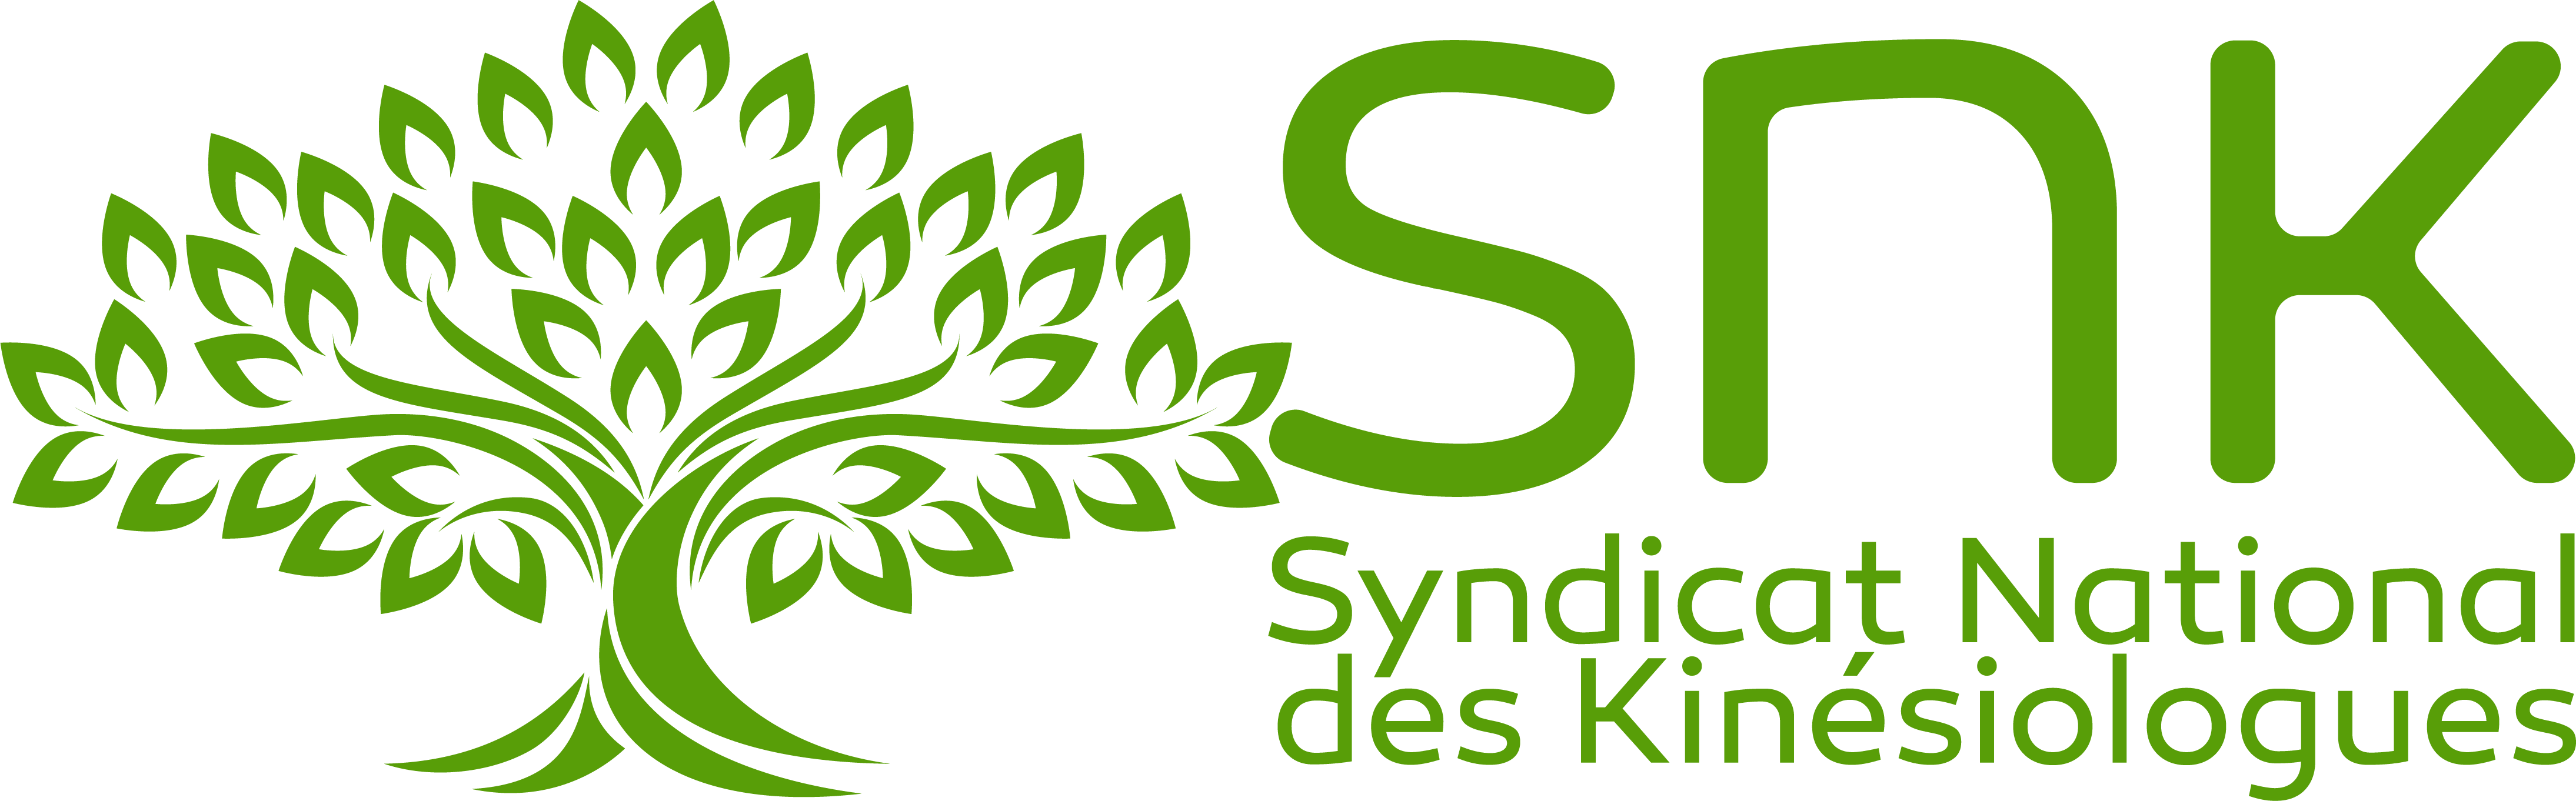 snk logo